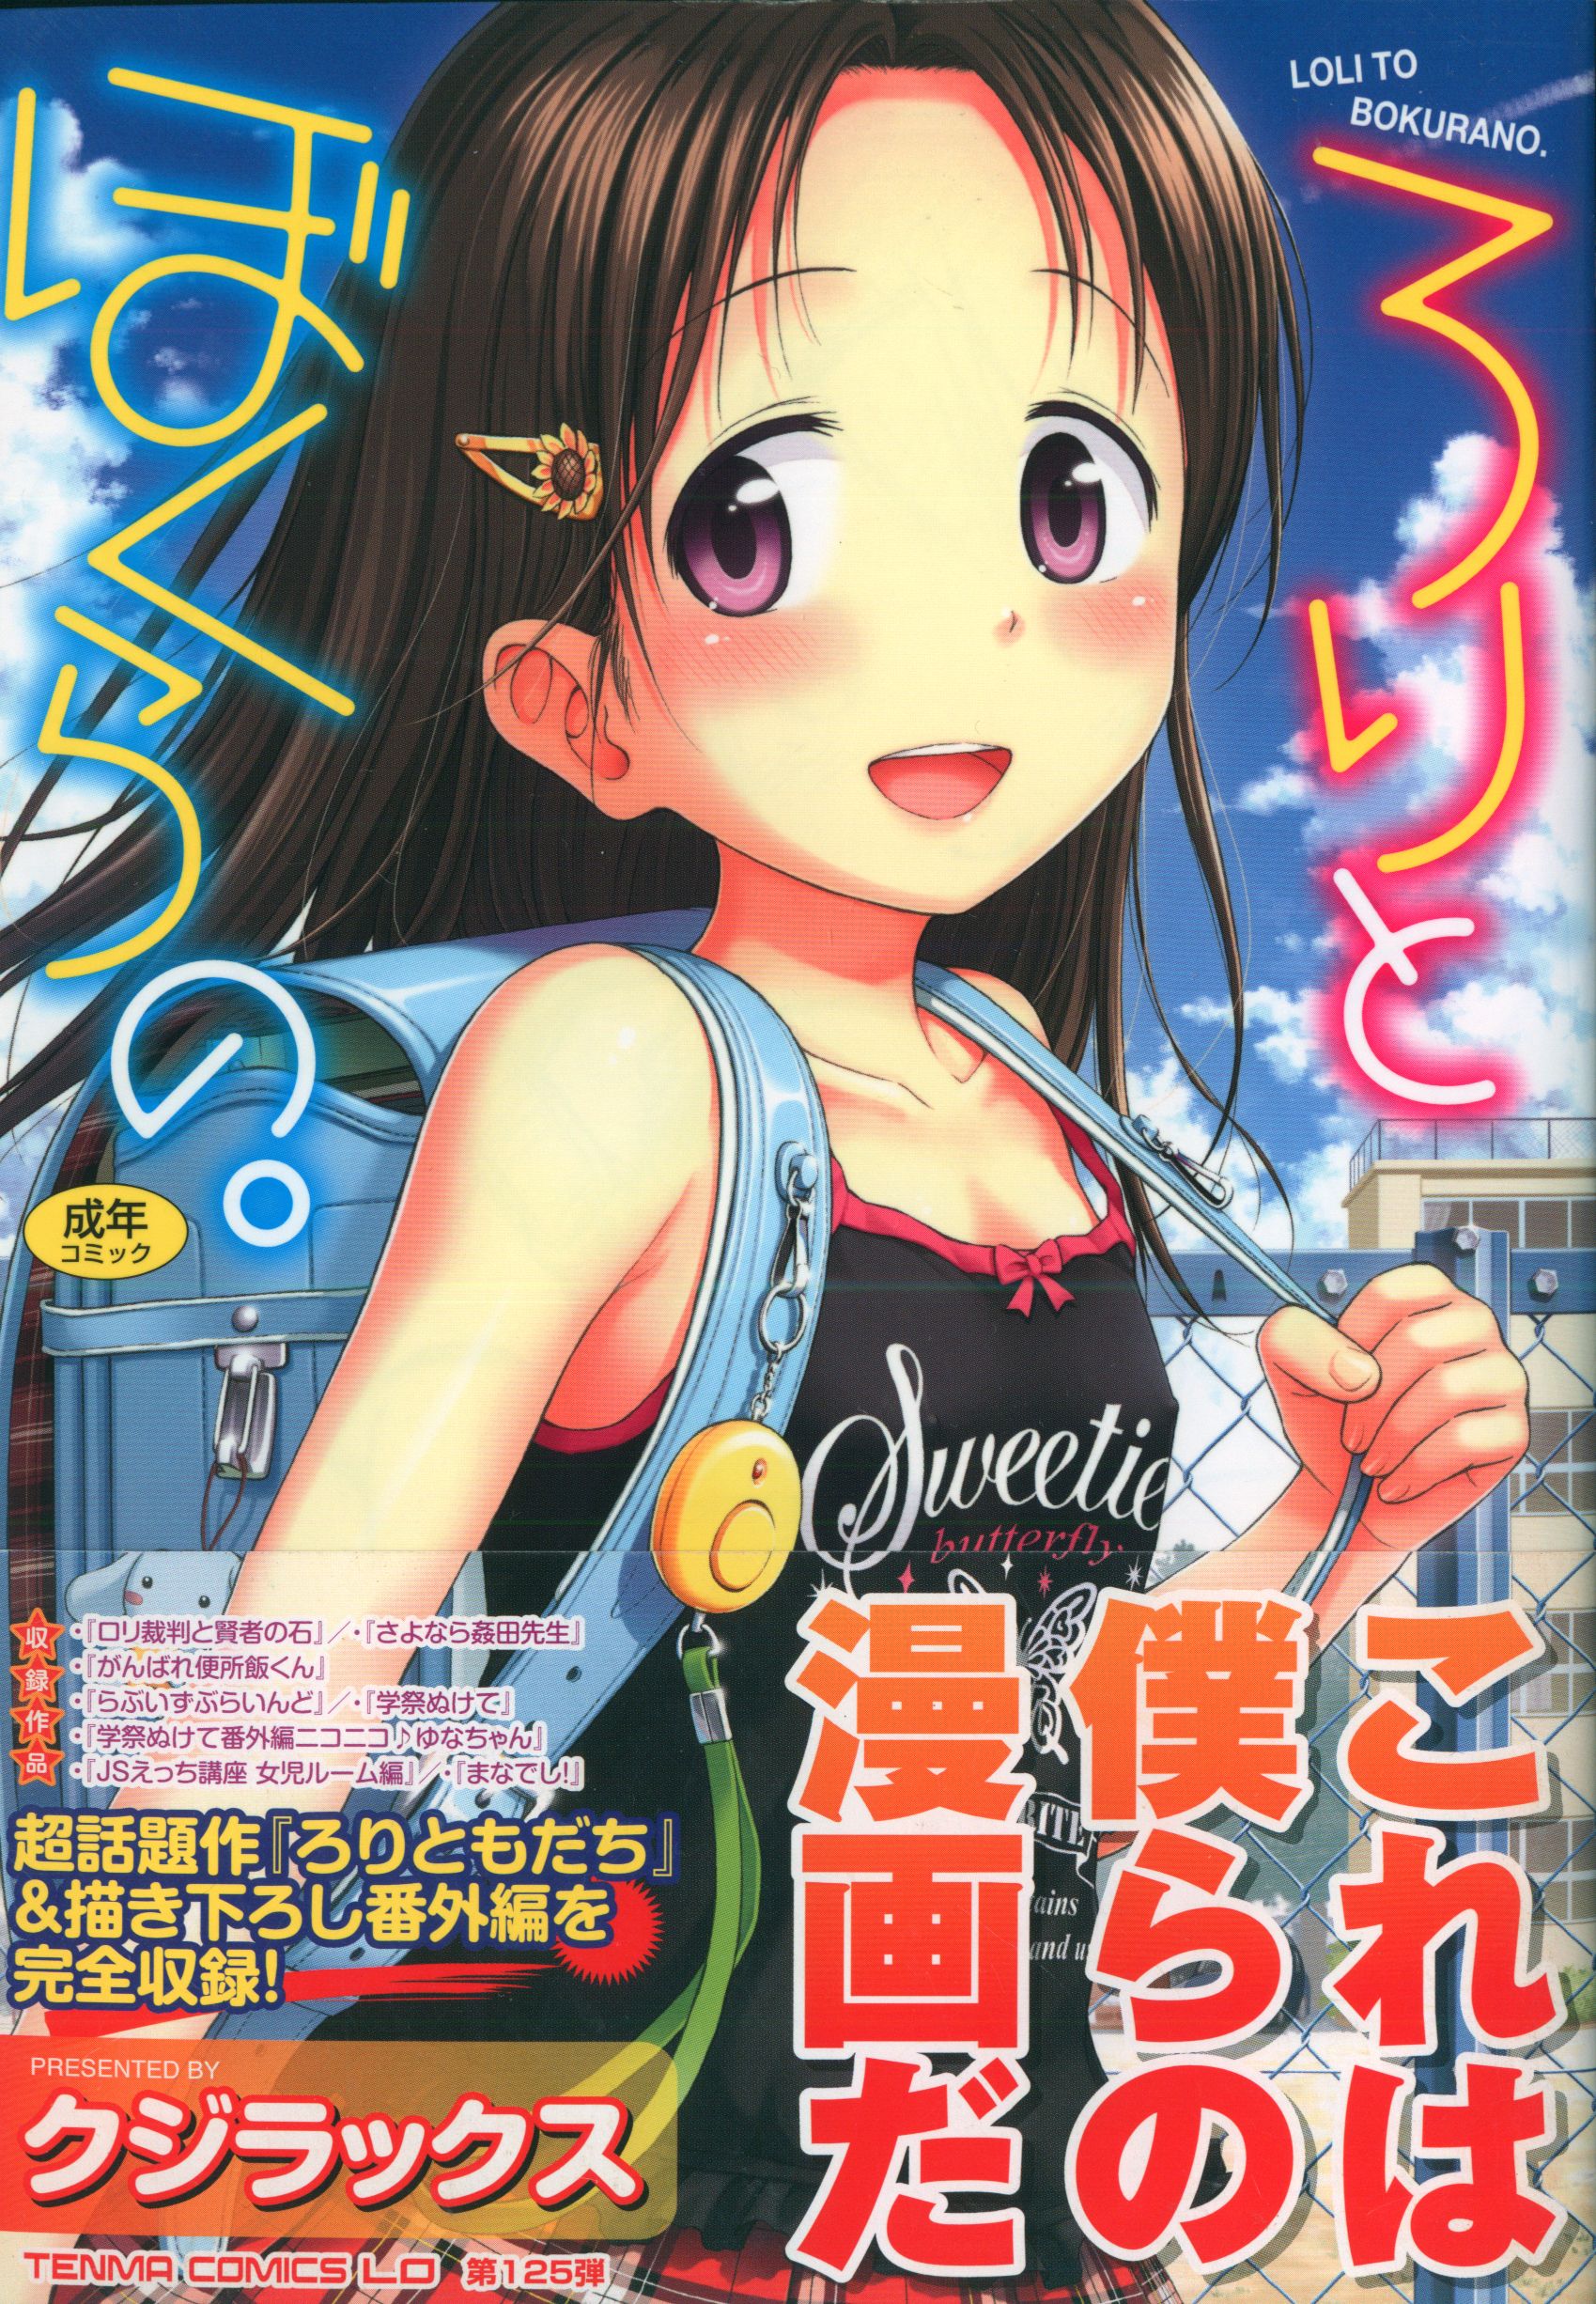 Of Akane Shinsha Tenma Comics LO Kujirakkusu Lori And Bokura With Obi Mandarake Online Shop